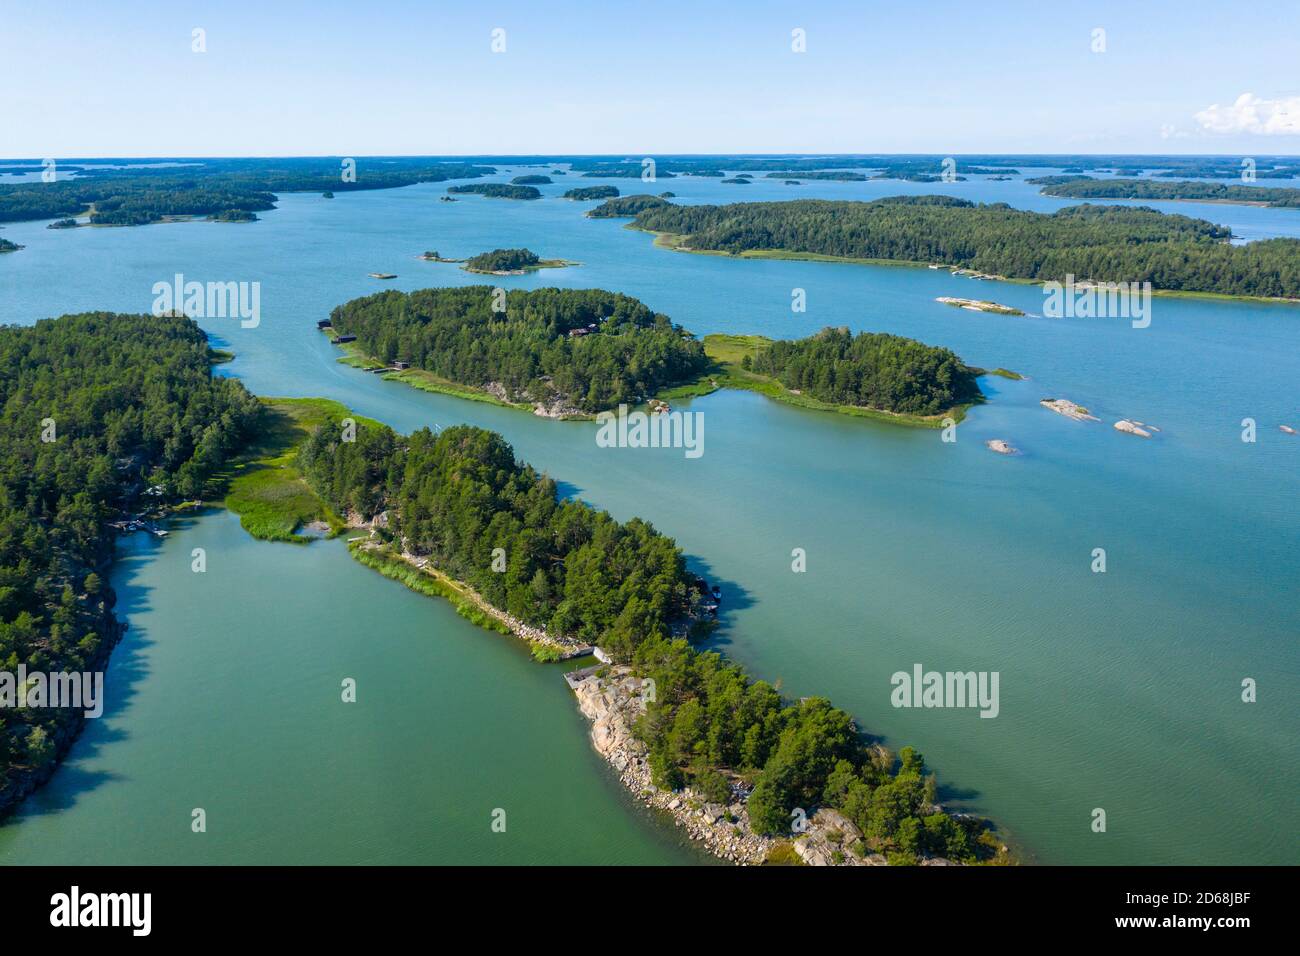 Vista aérea de la región del suroeste de Finlandia, donde hay miles de islas, en el cruce del Golfo de Finlandia y el Golfo de Botnia. R Foto de stock